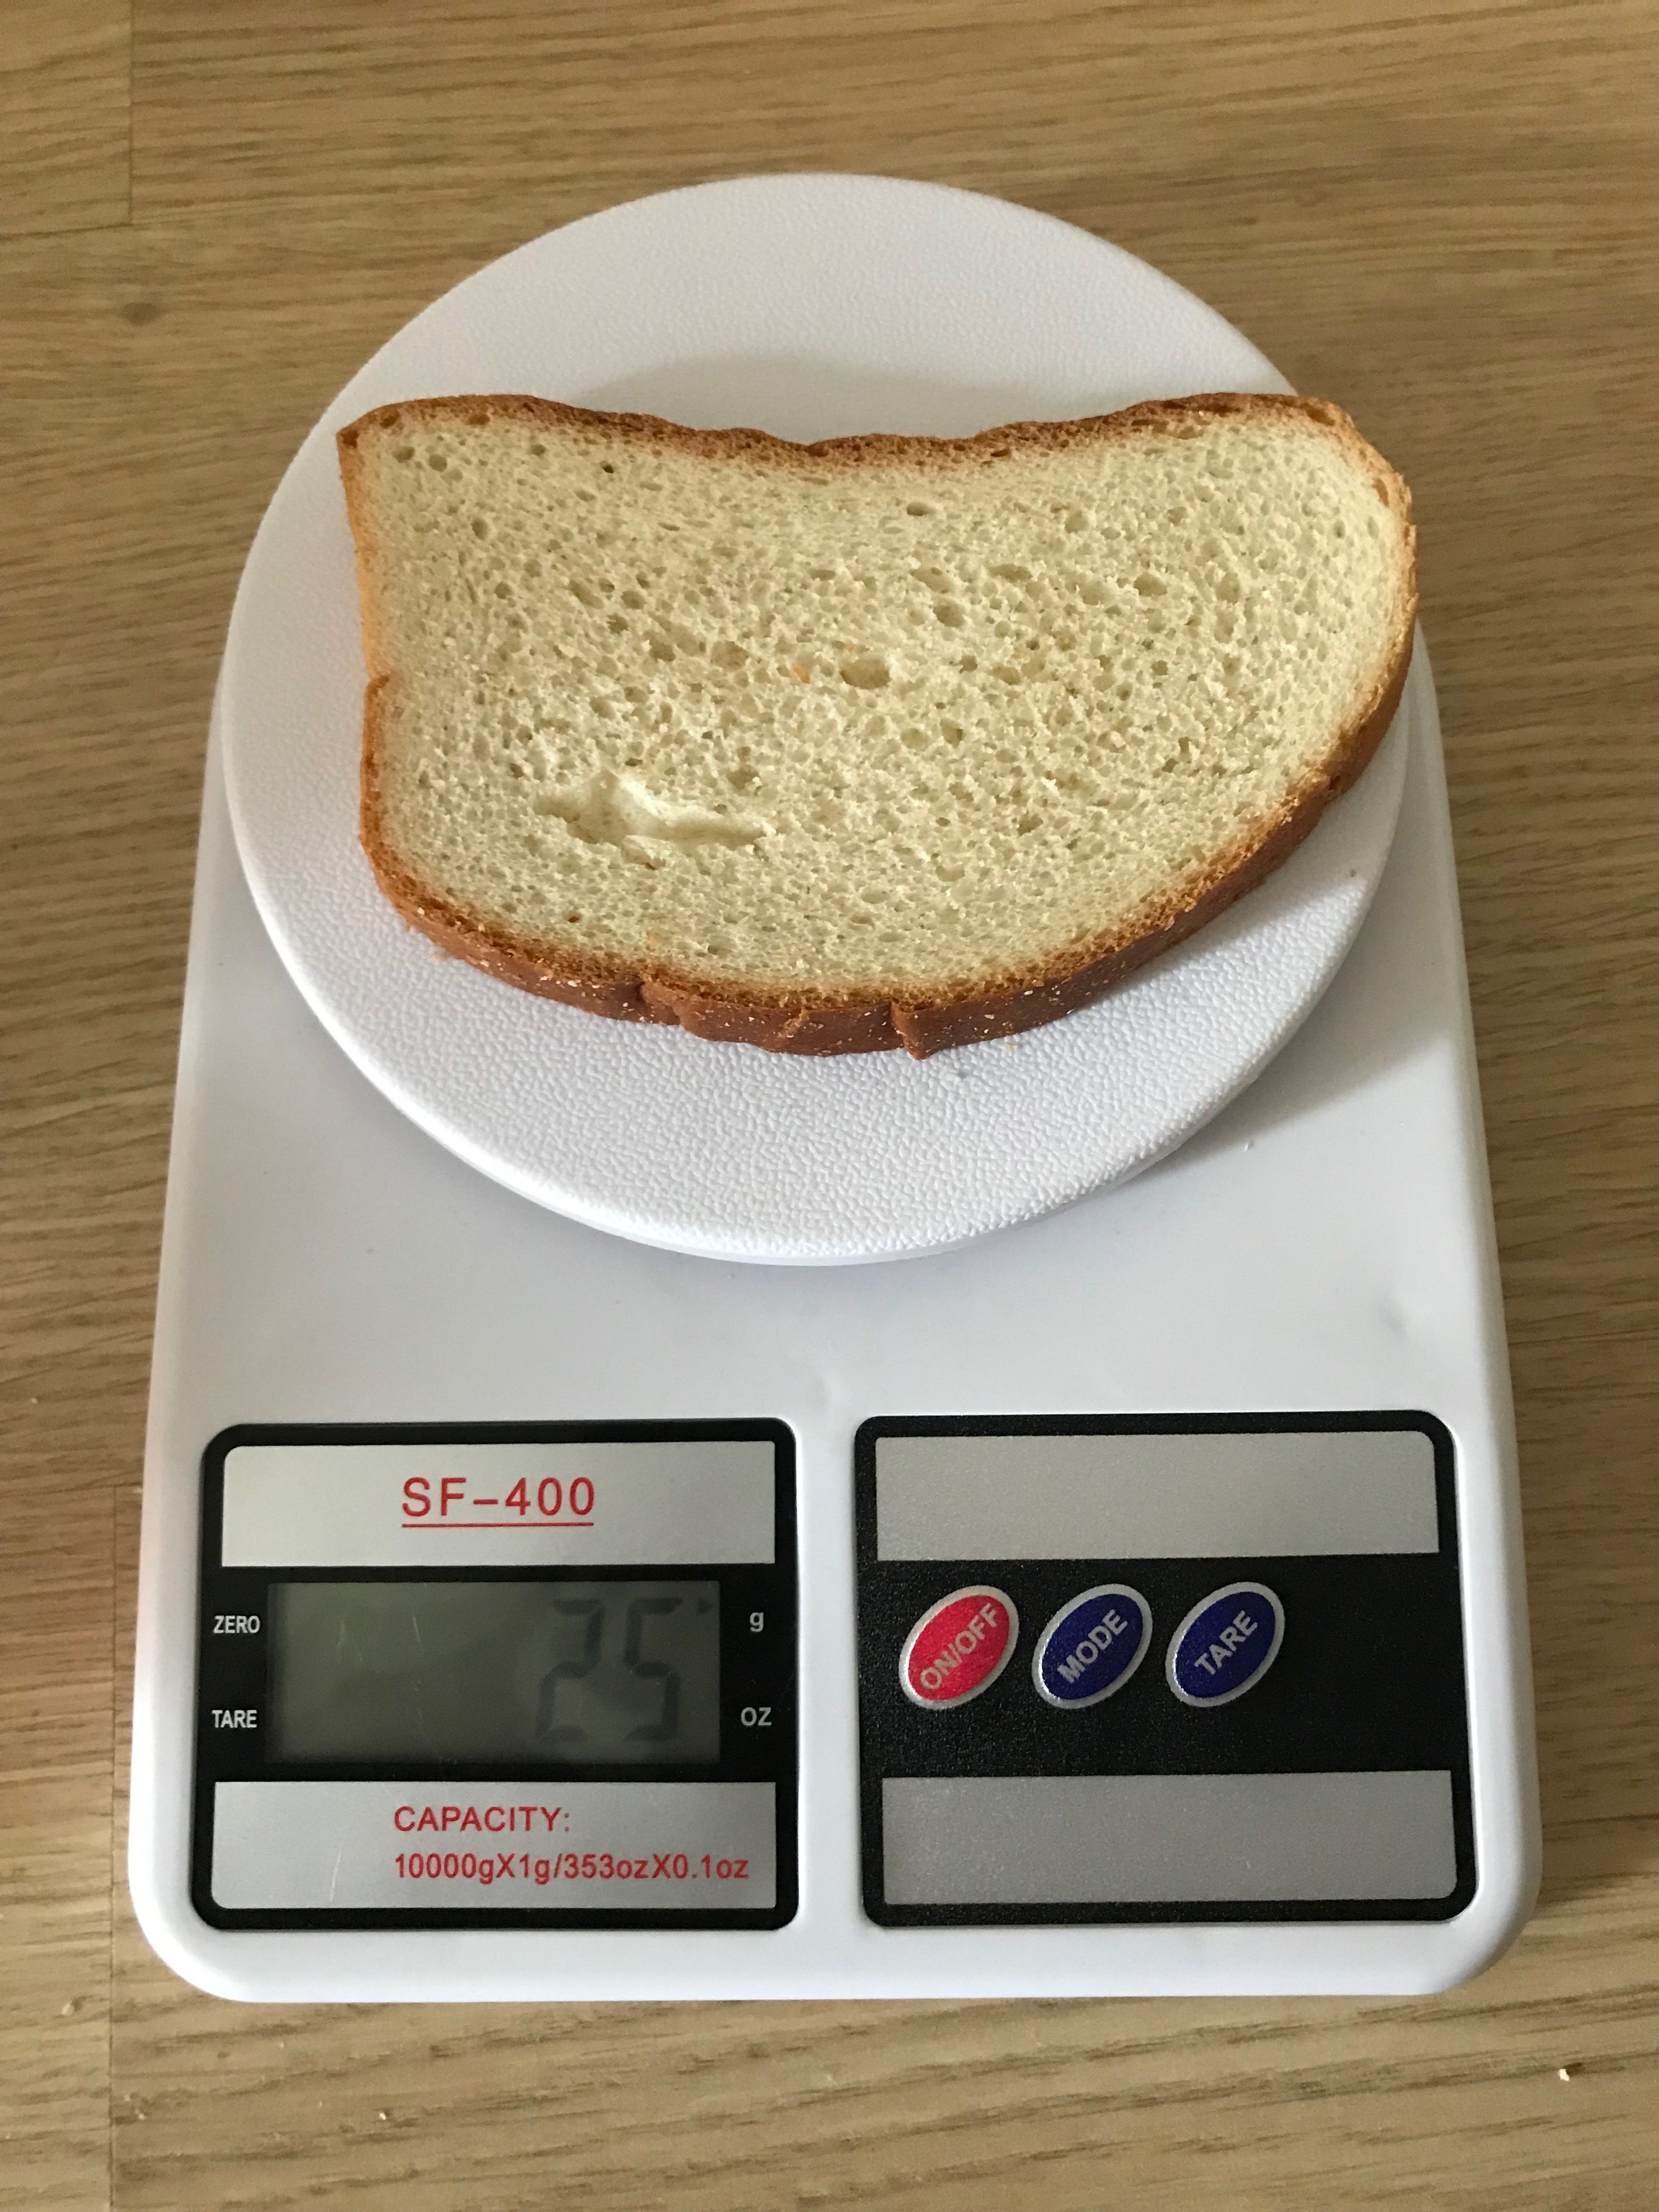 Kolik váží krajíc bílého chleba?